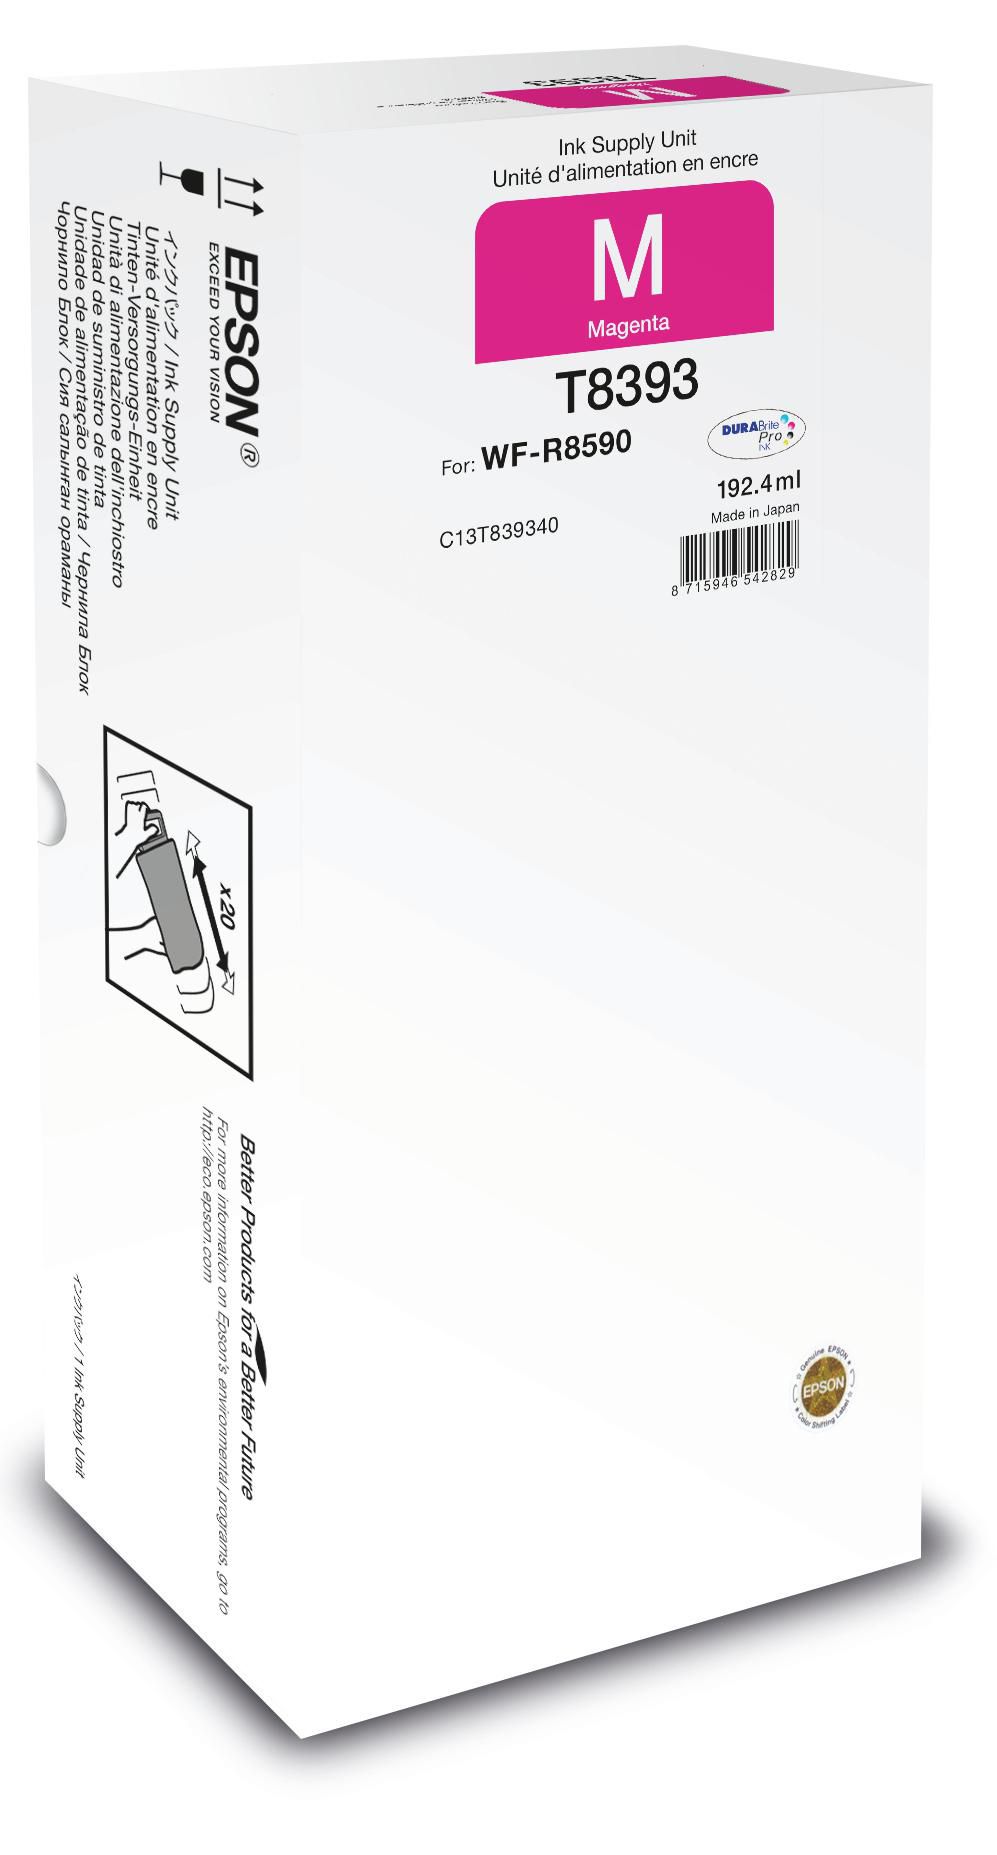 EPSON Ink Cart/WorkForce Pro WF-R8590 Magenta